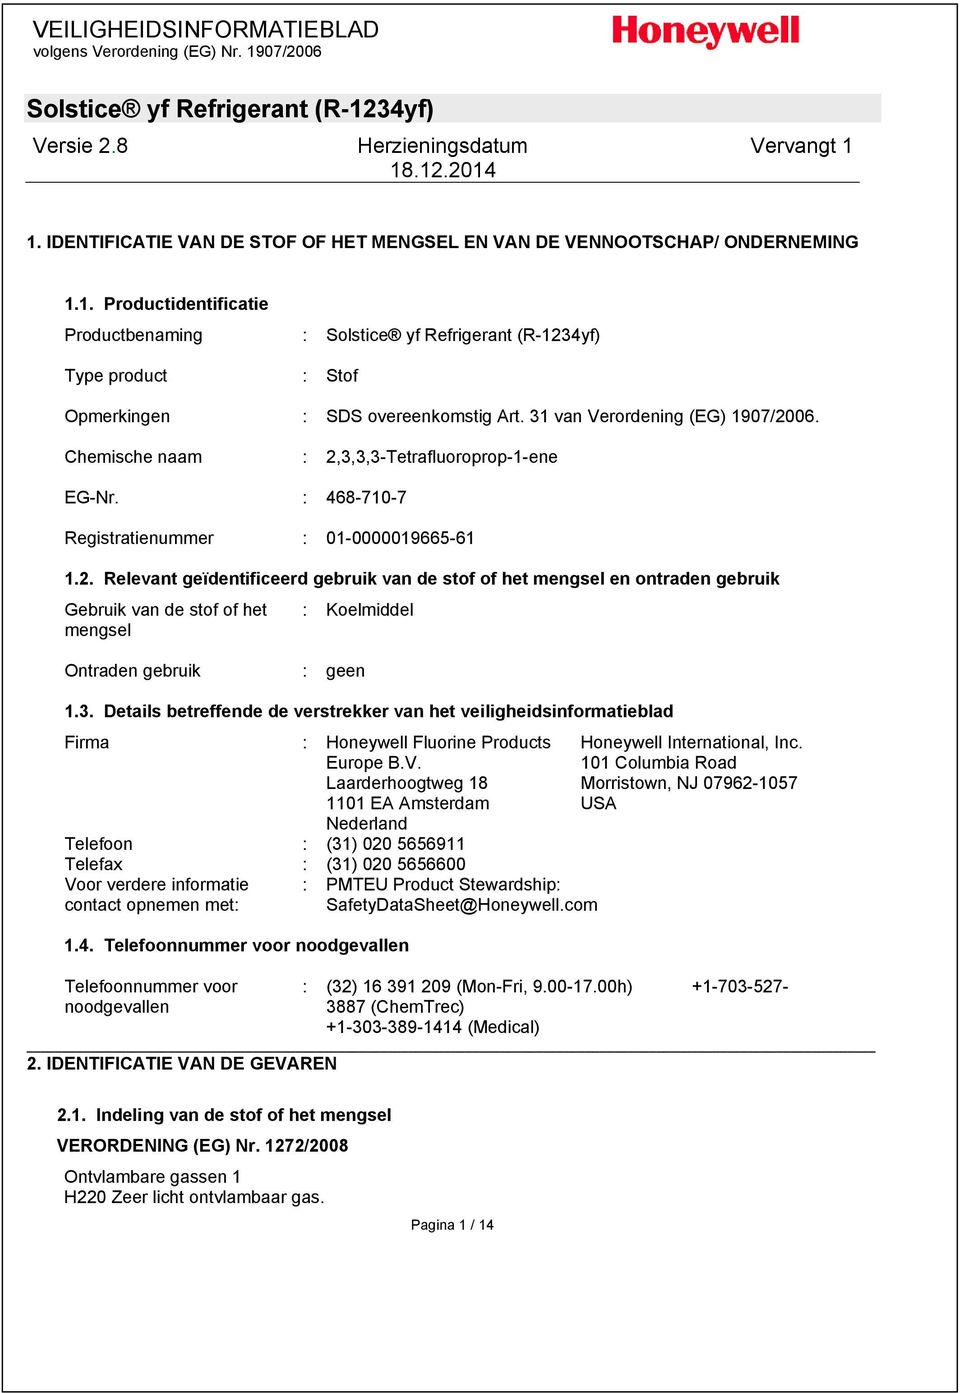 3. Details betreffende de verstrekker van het veiligheidsinformatieblad Firma : Honeywell Fluorine Products Europe B.V.